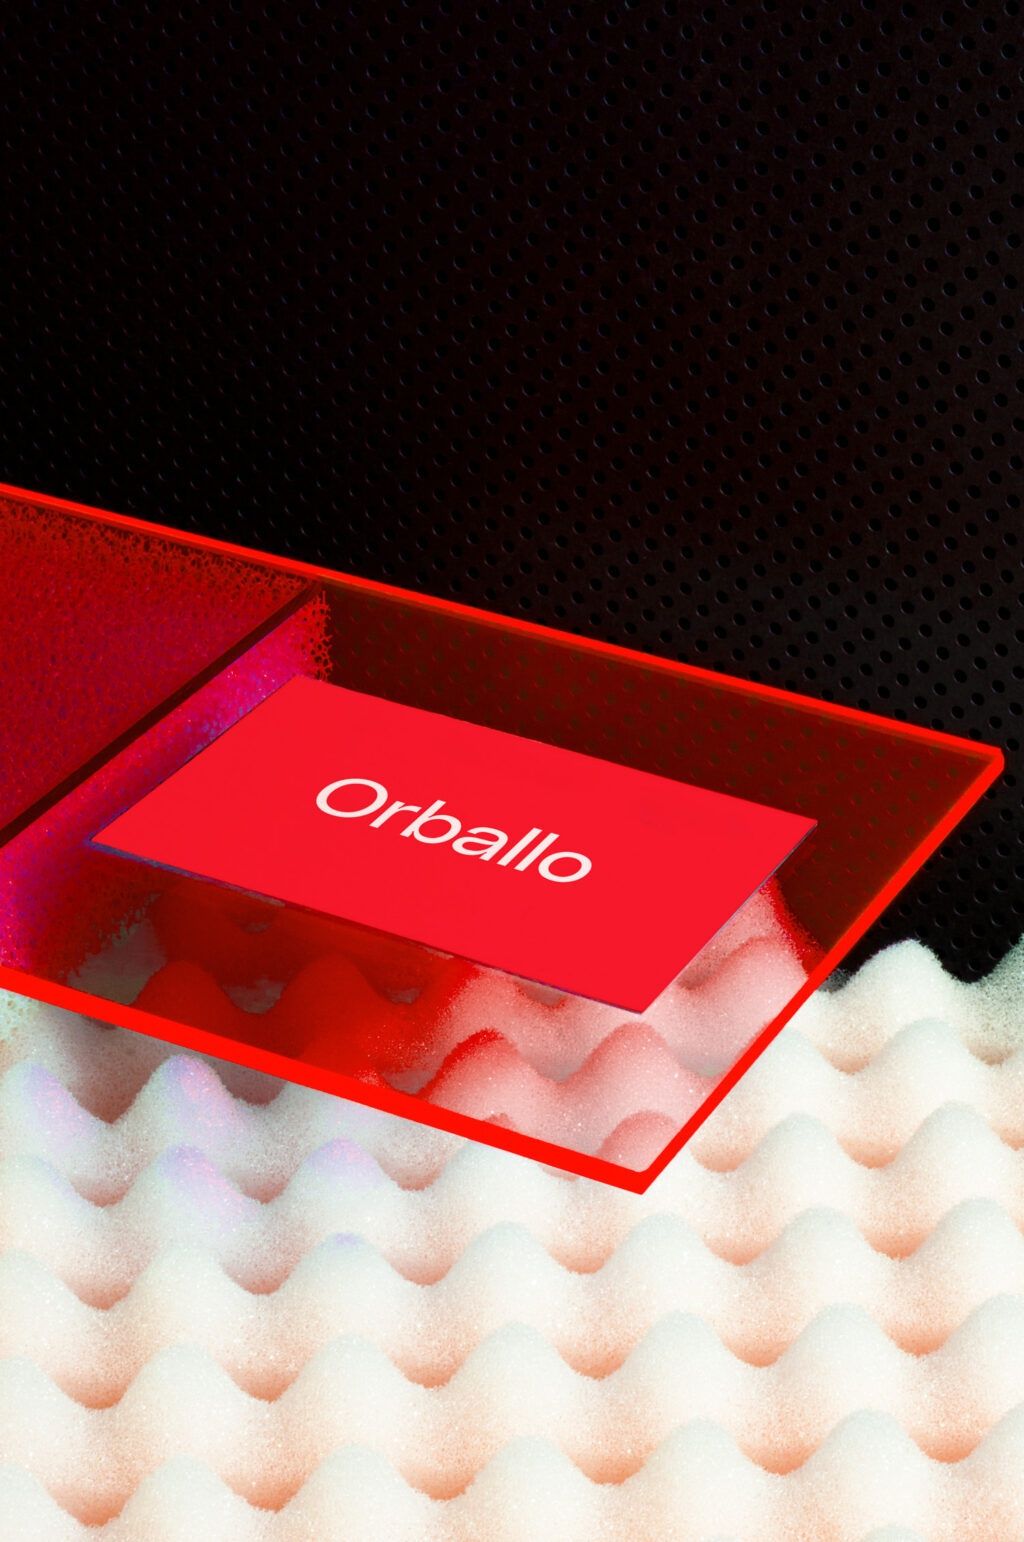 Orballo清洁服务公司标志设计 飞特网 标志设计作品欣赏